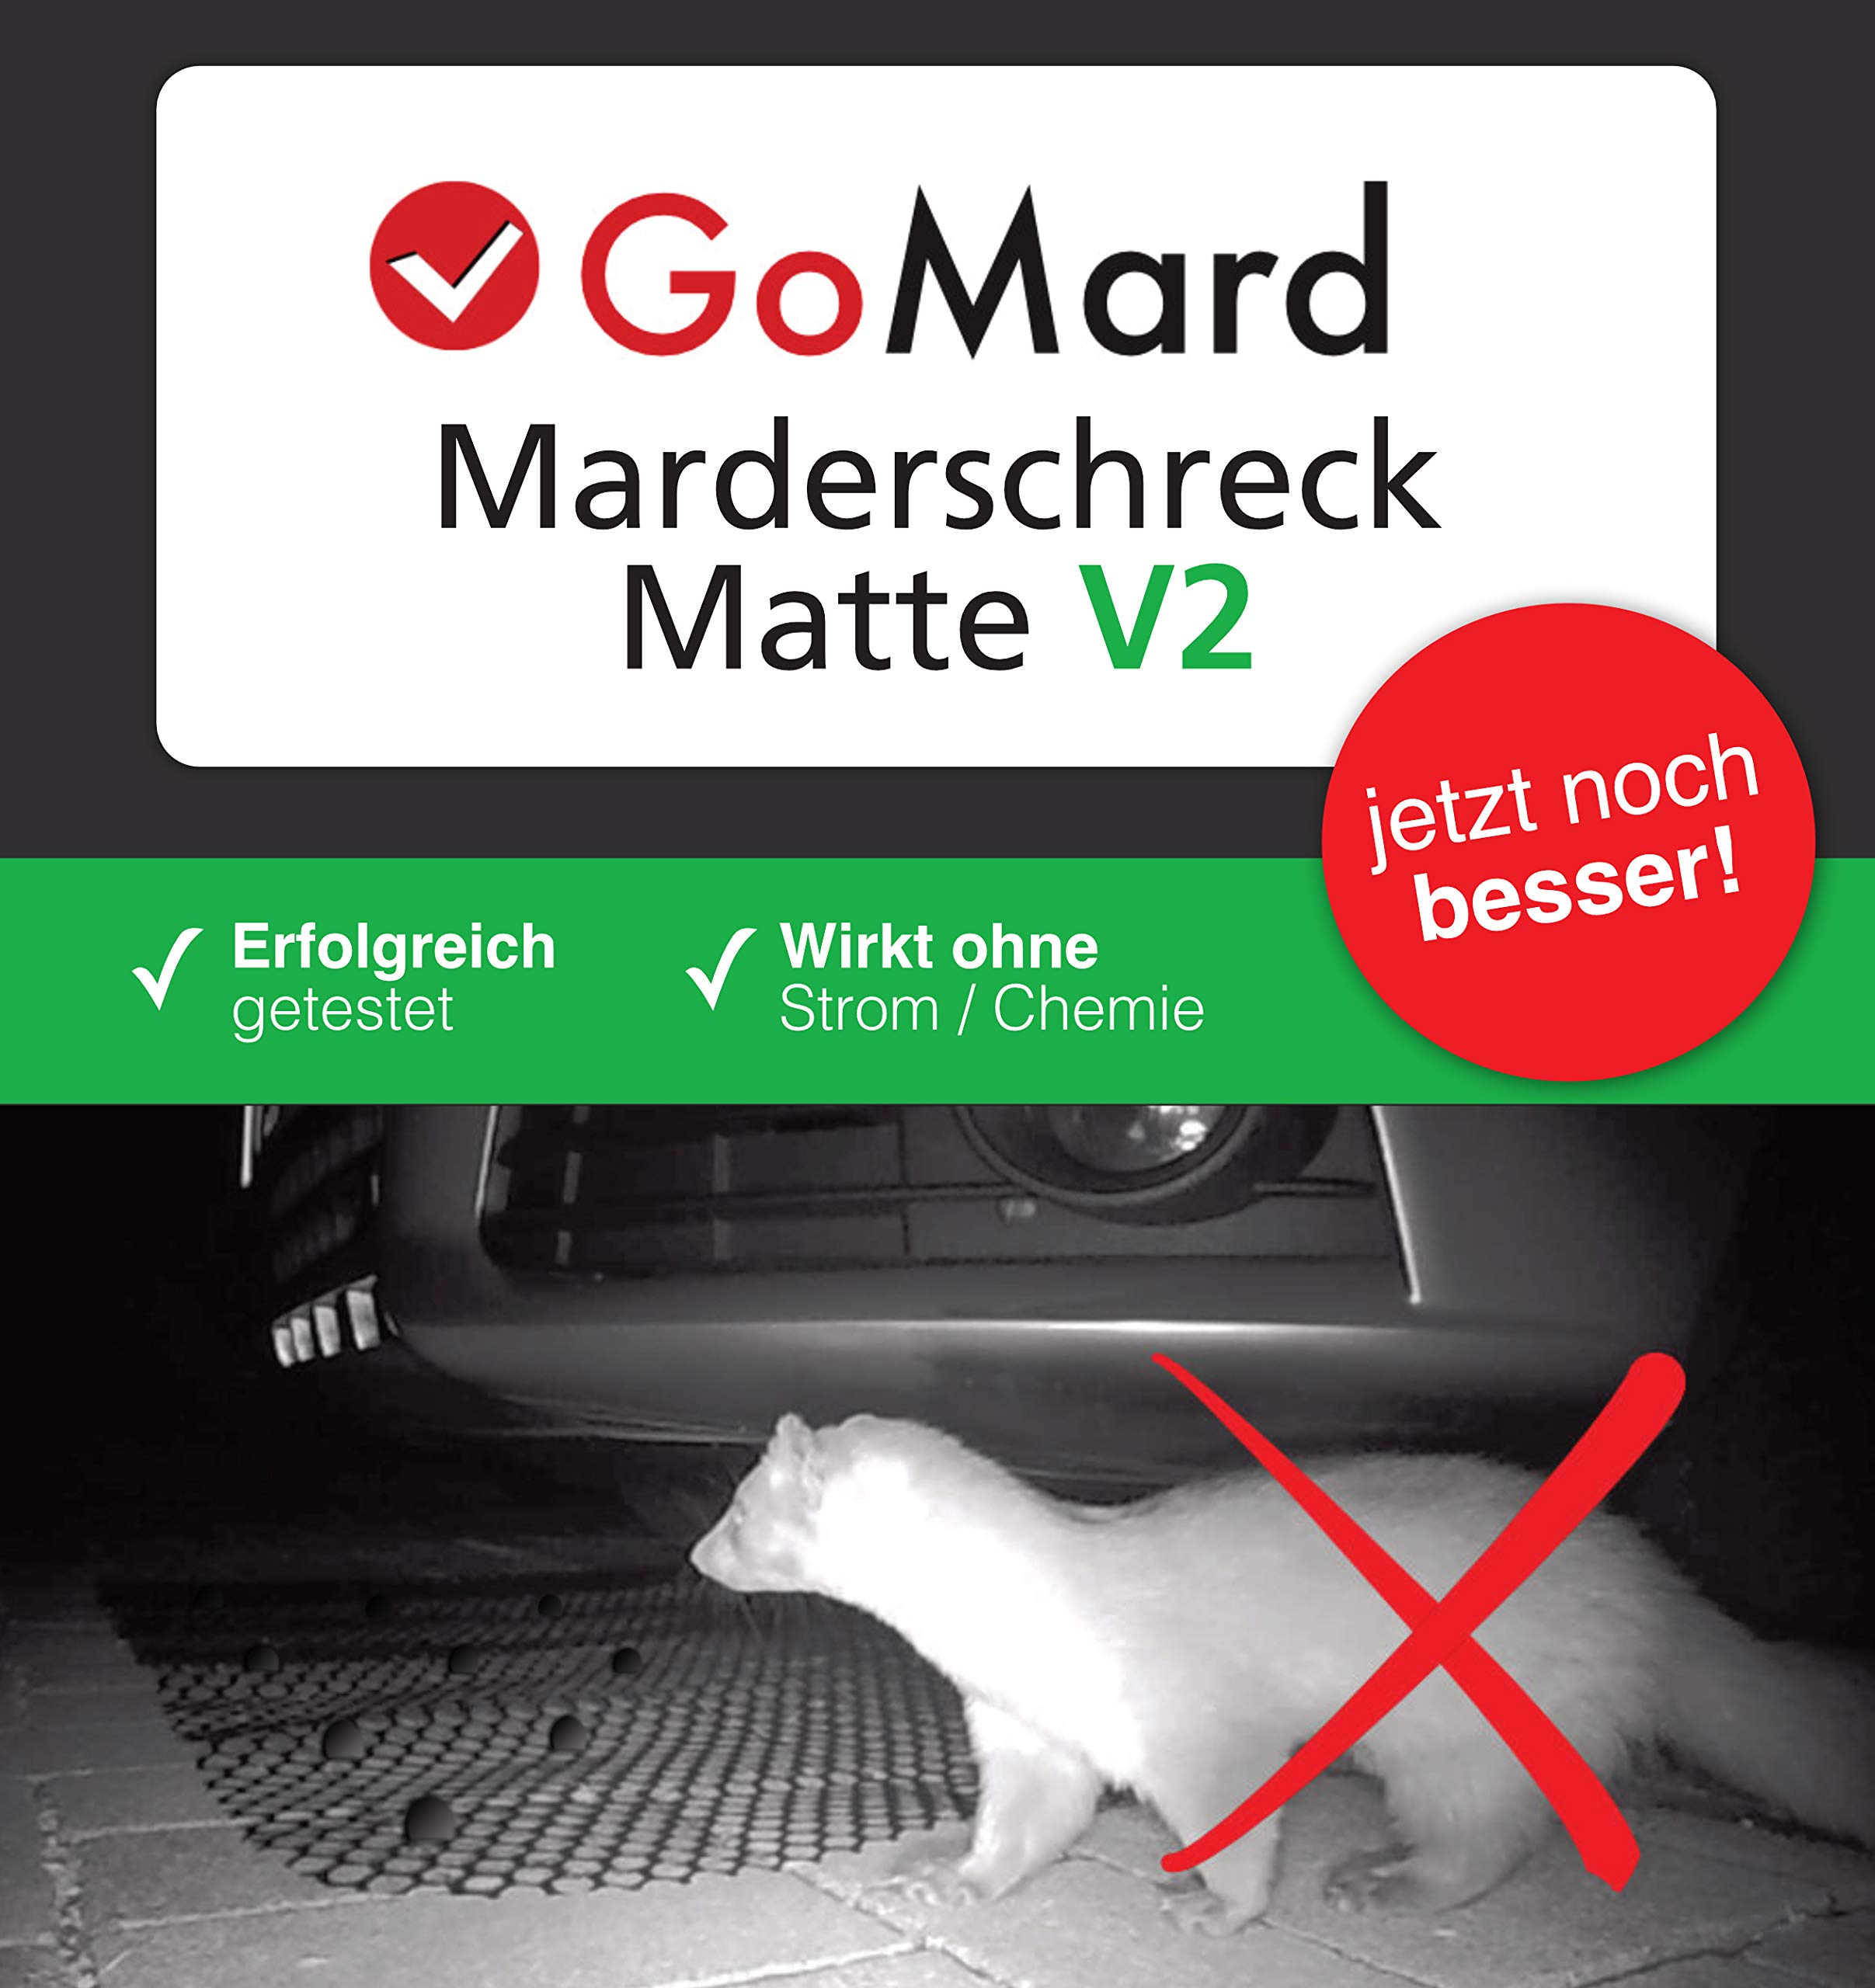 https://scheckhefte.com/wp-content/uploads/2020/09/gomard-marderschreck-auto-marderschutz-matte-gegen-mader-und-katzen-1.jpg